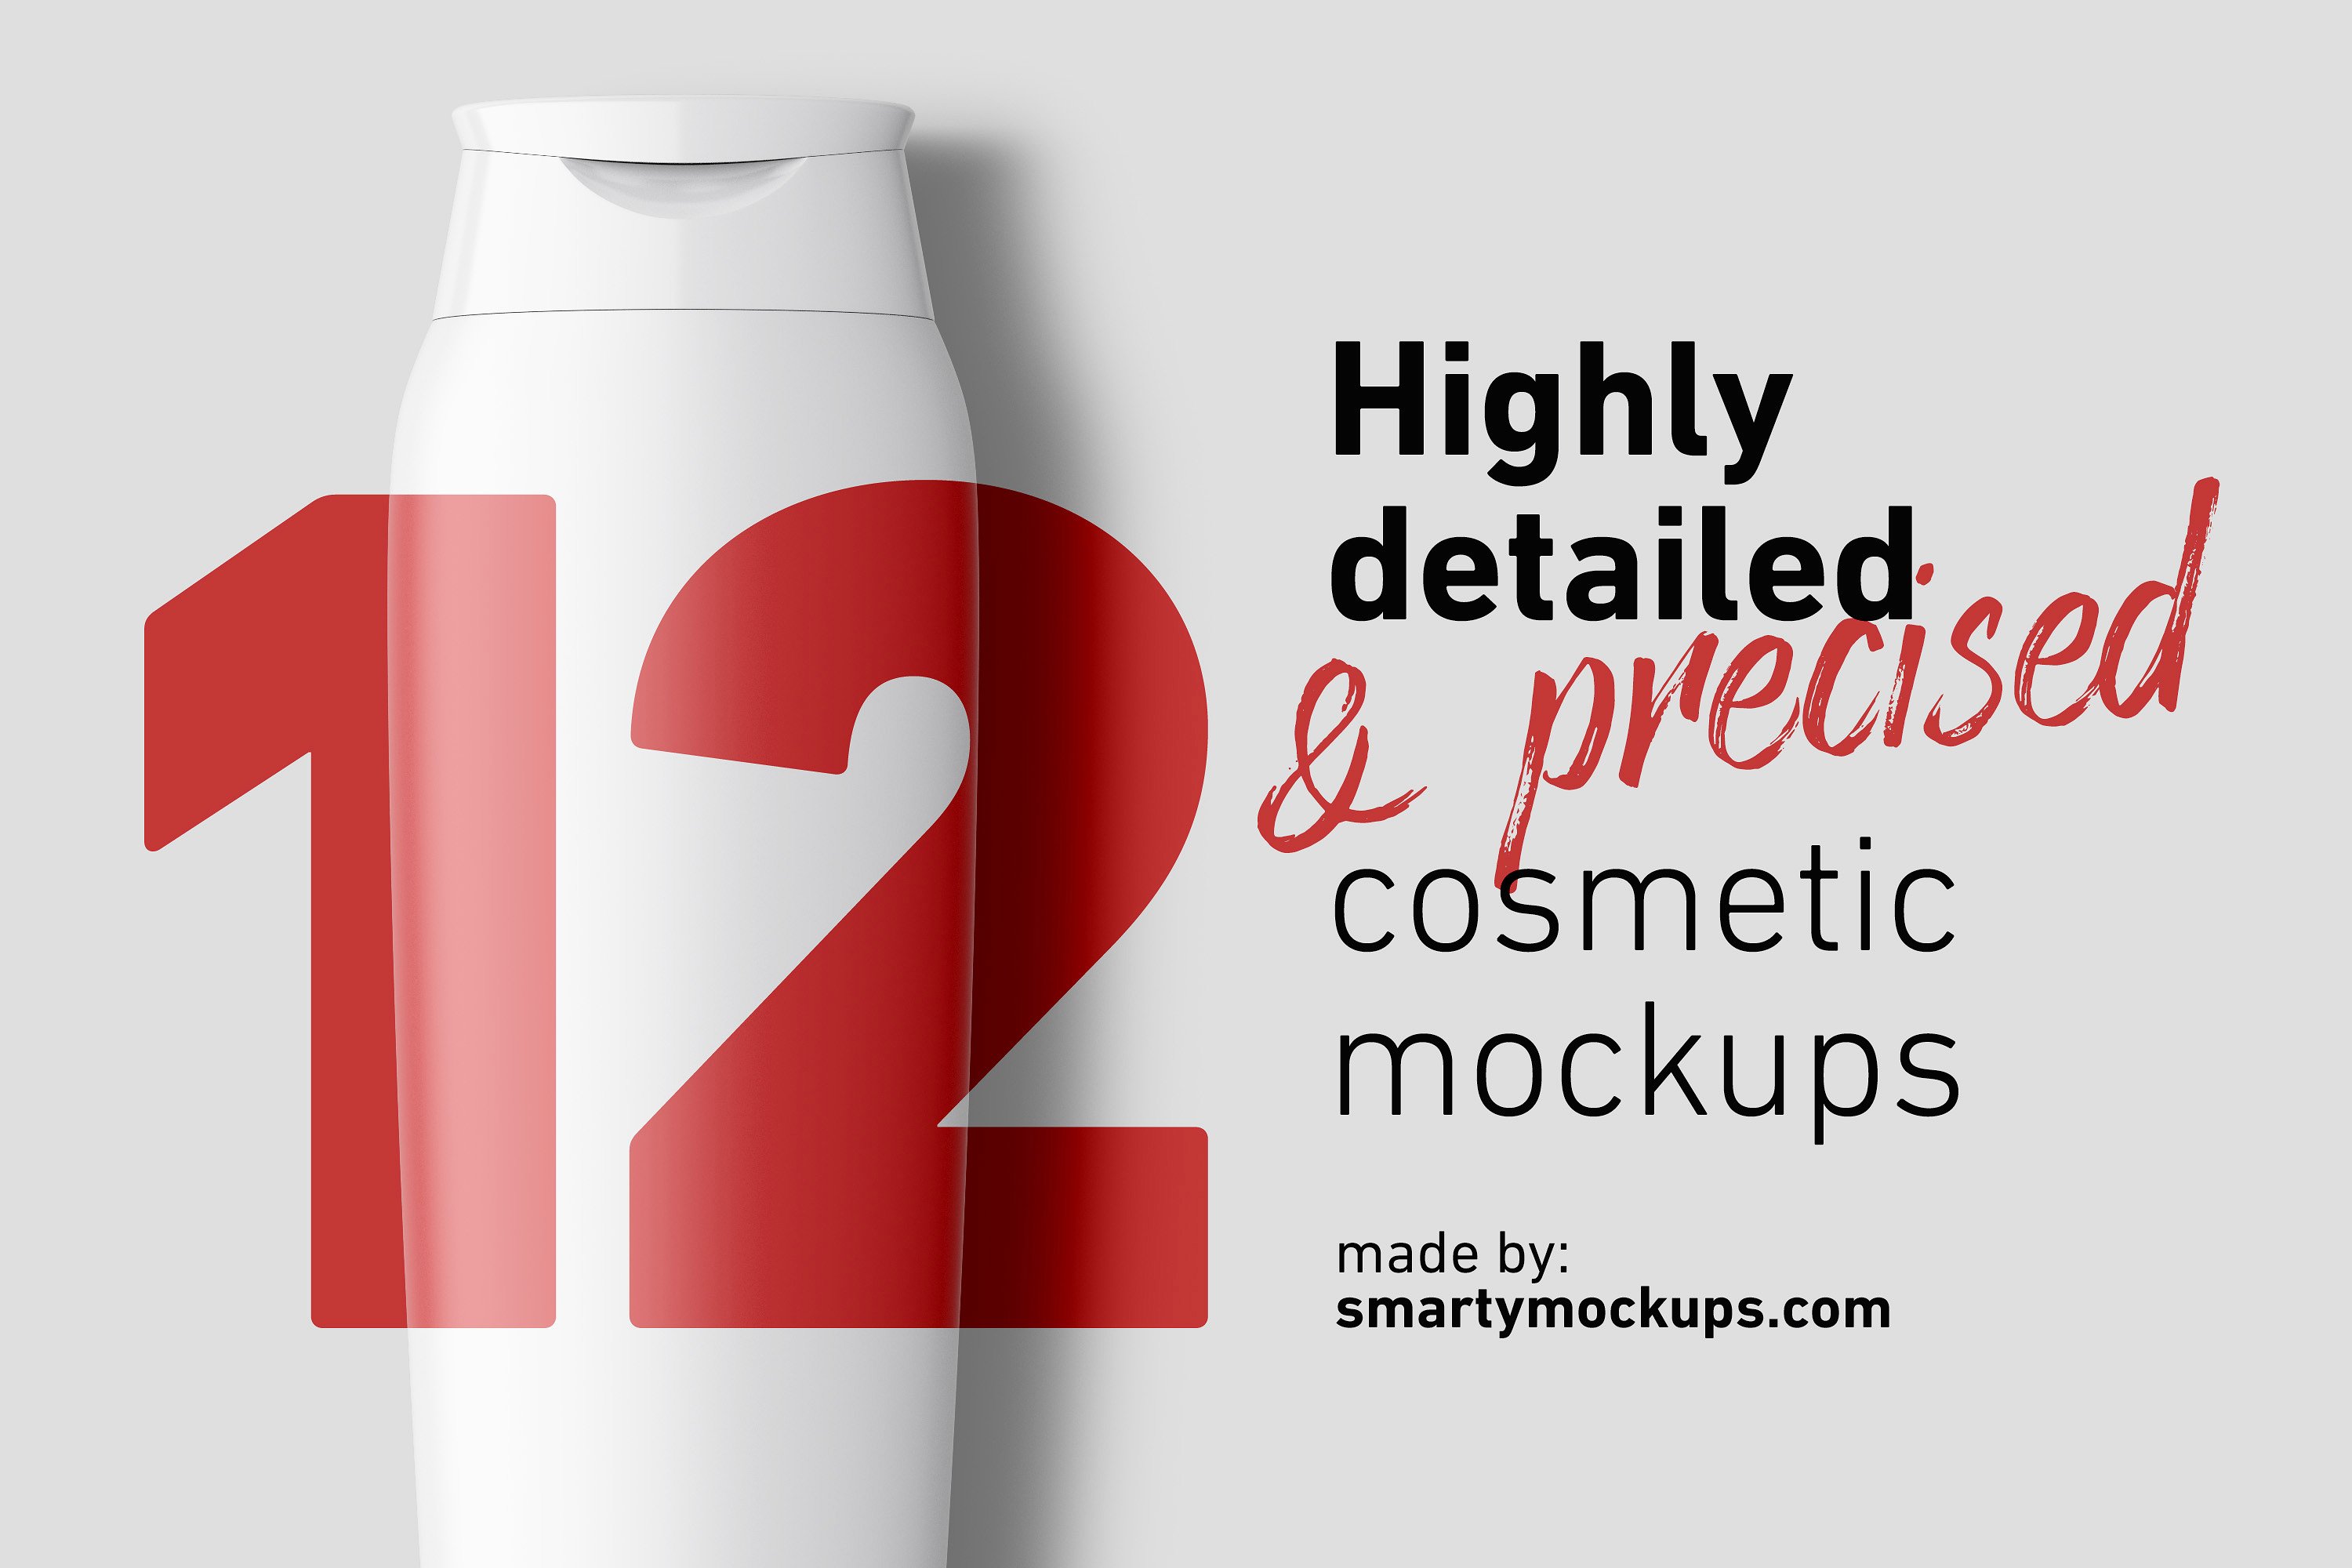 超超级强大的化妆品场景样机组合 Super Super Cosmetic Mockups Bundle Pack插图13